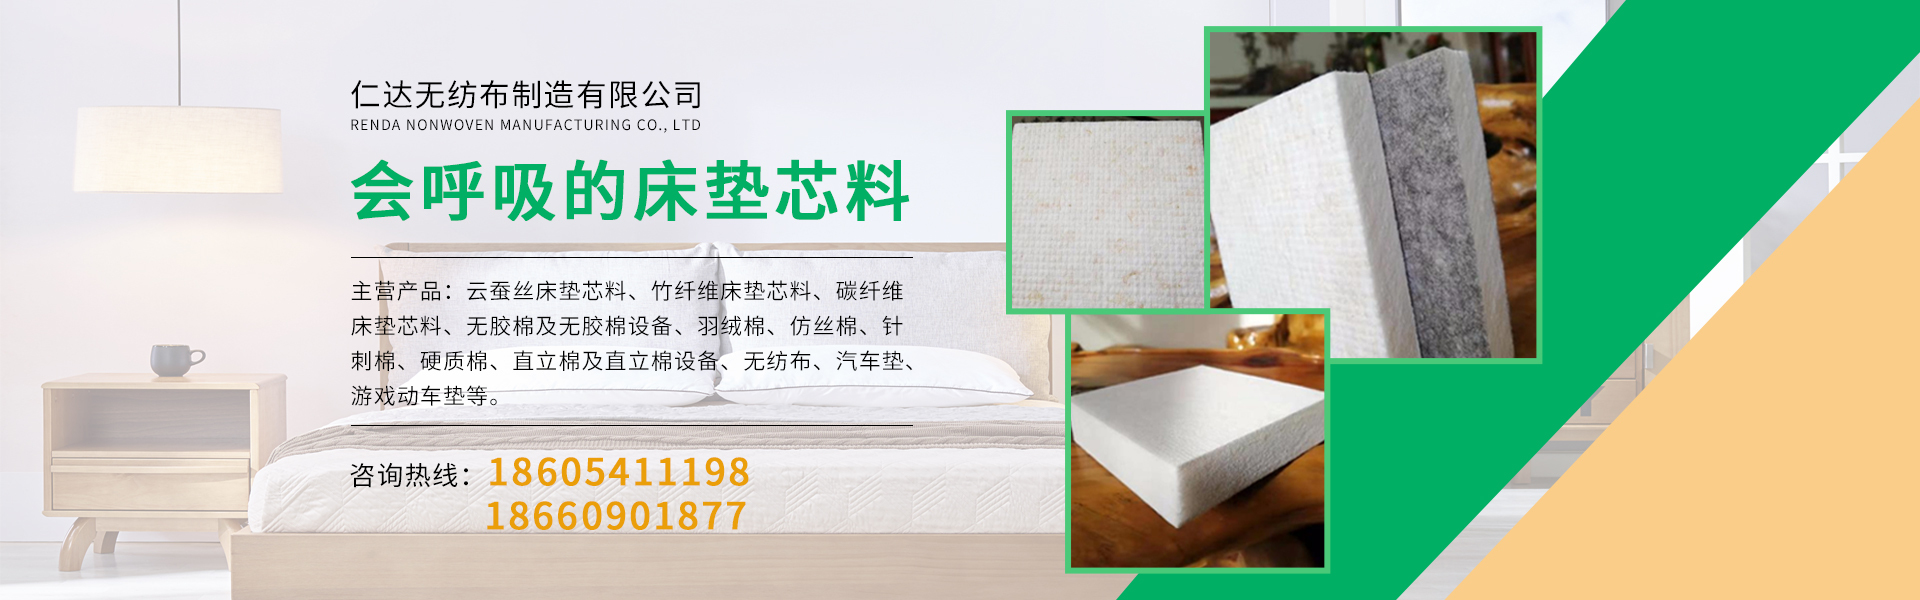 竹纤维床垫芯料,碳纤维床垫芯料,竹炭纤维床垫芯料,无胶棉